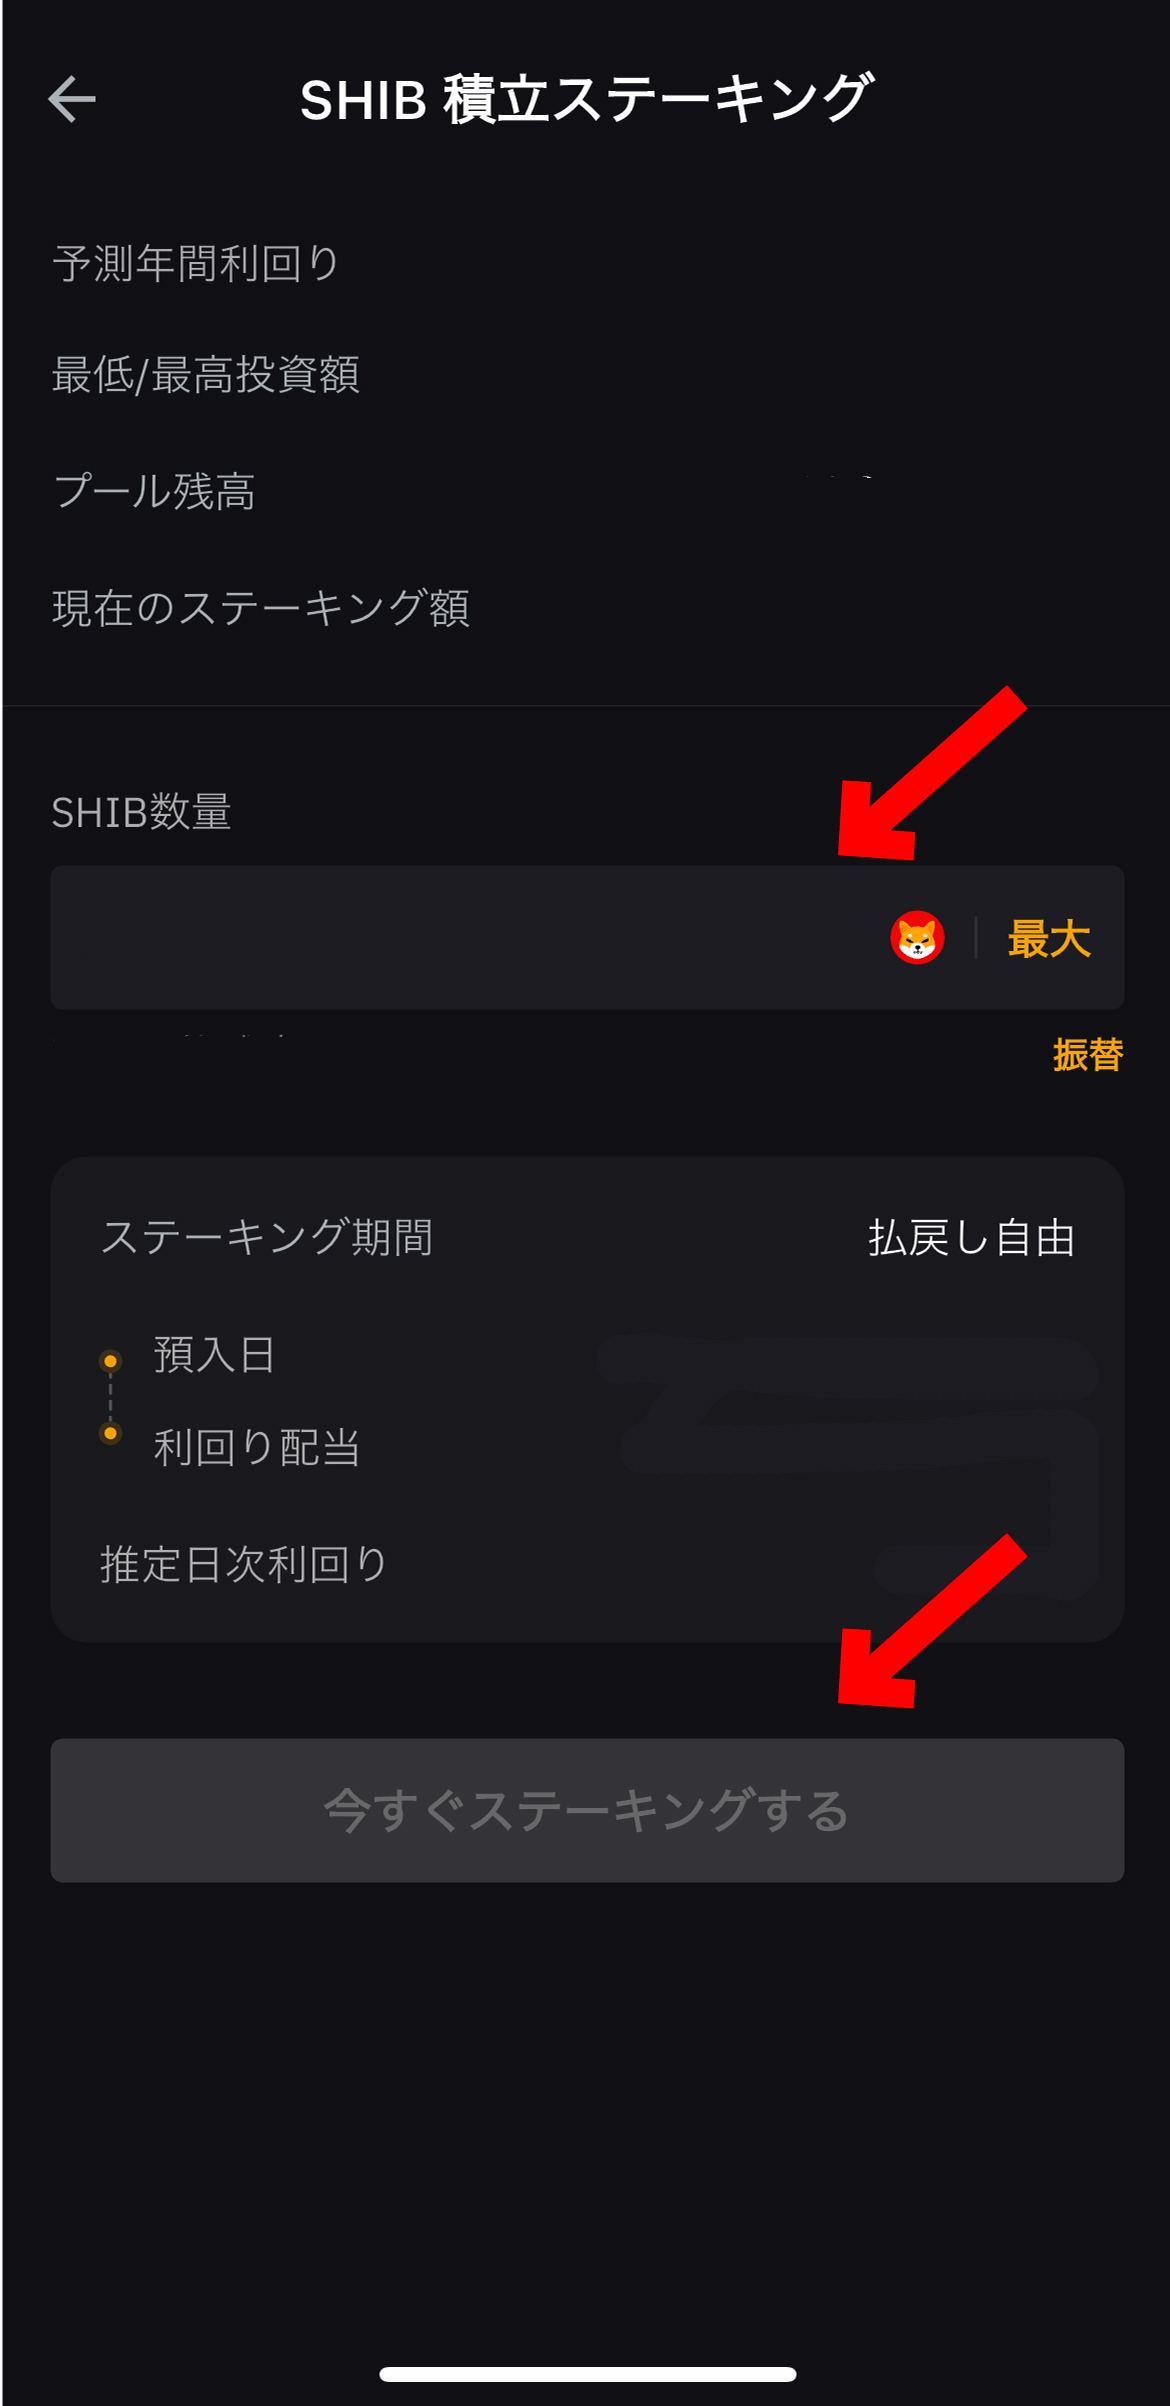 仮想通貨 柴犬コイン（SHIB/Shiba Inu）の買い方、ステーキング方法【Bybit】【バイビット】【シバイヌ】今すぐステーキングするを選択します